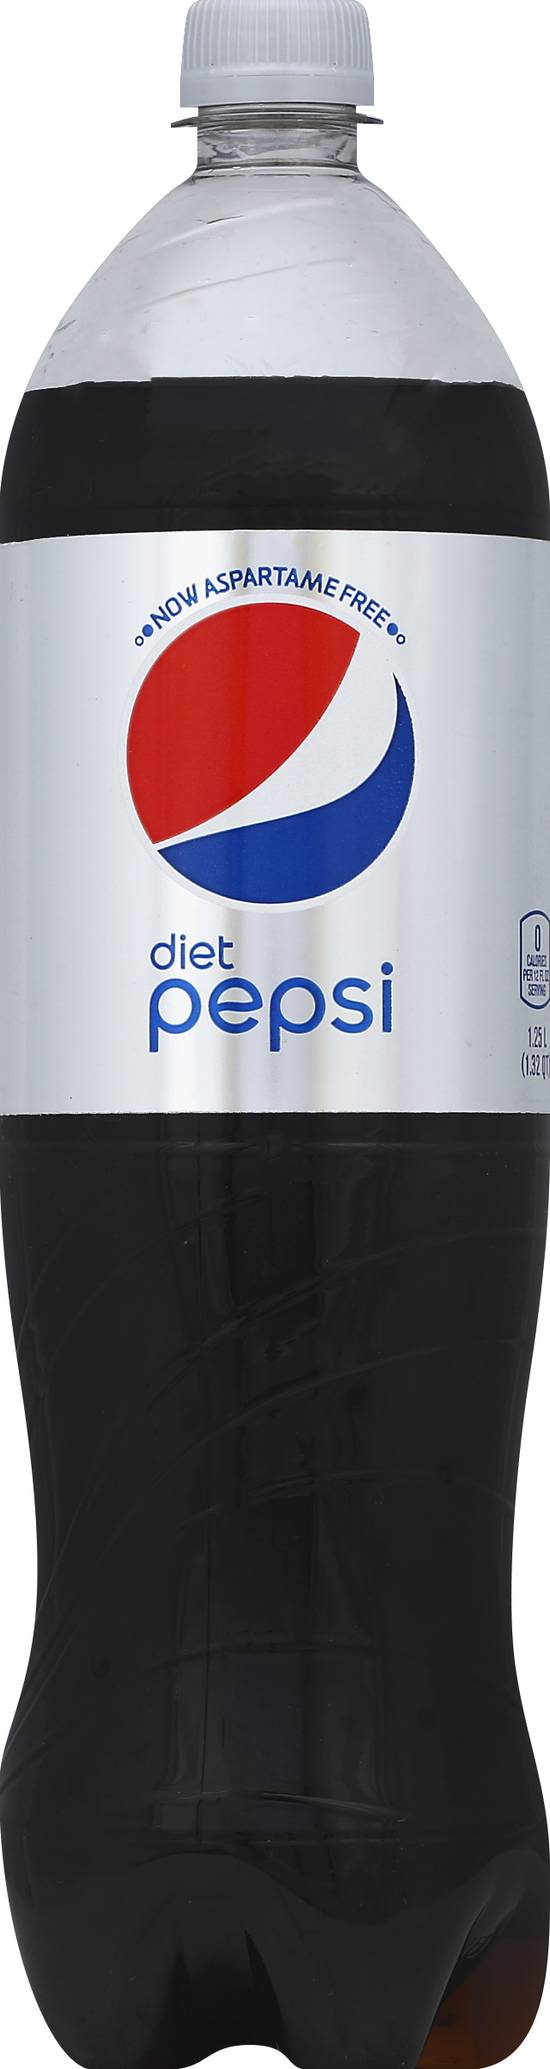 Pepsi Cola Diet (1.32 qt)